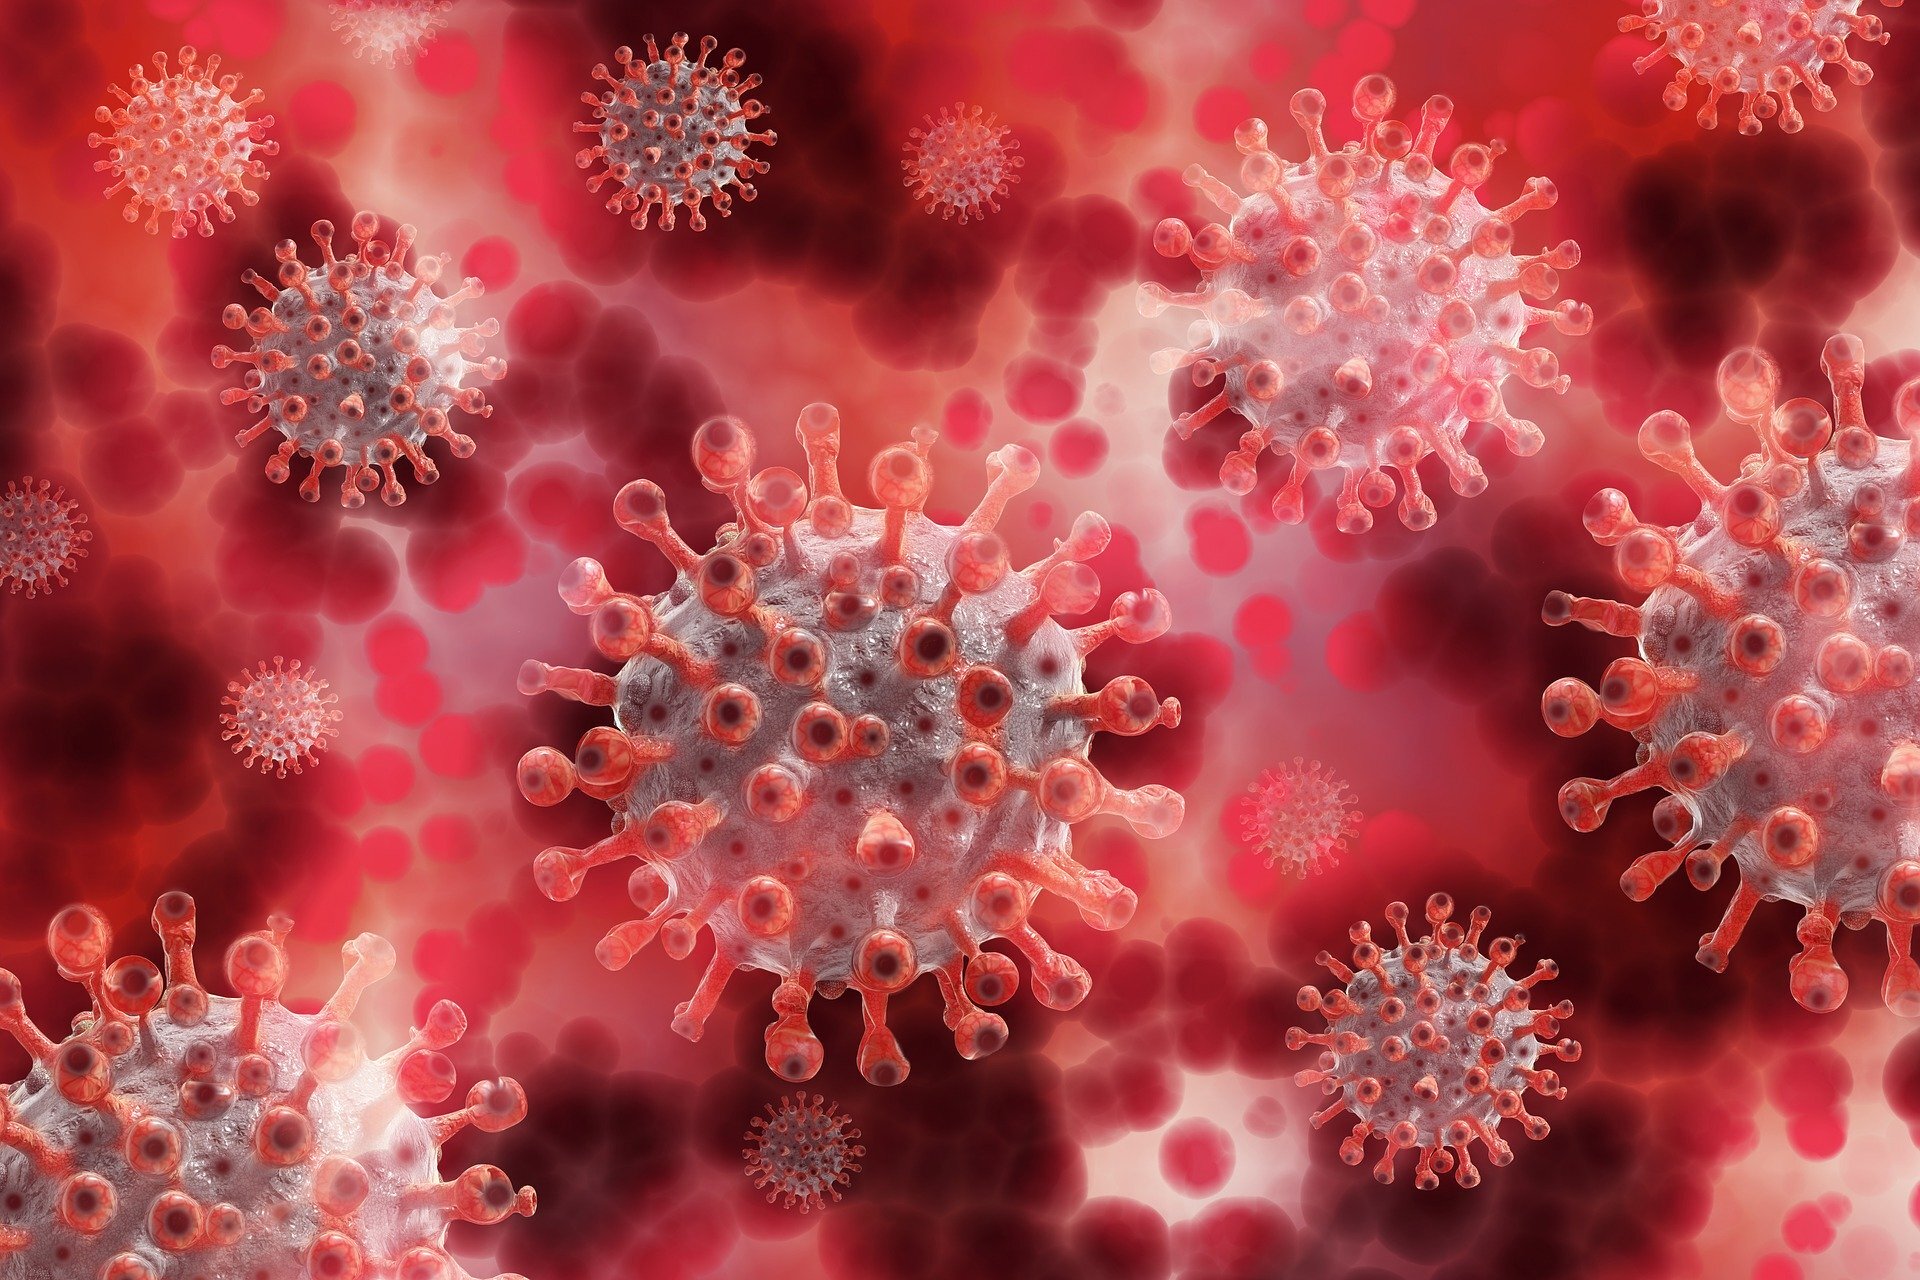 Группа ученых, исследующих происхождение вируса Covid-19, распущена